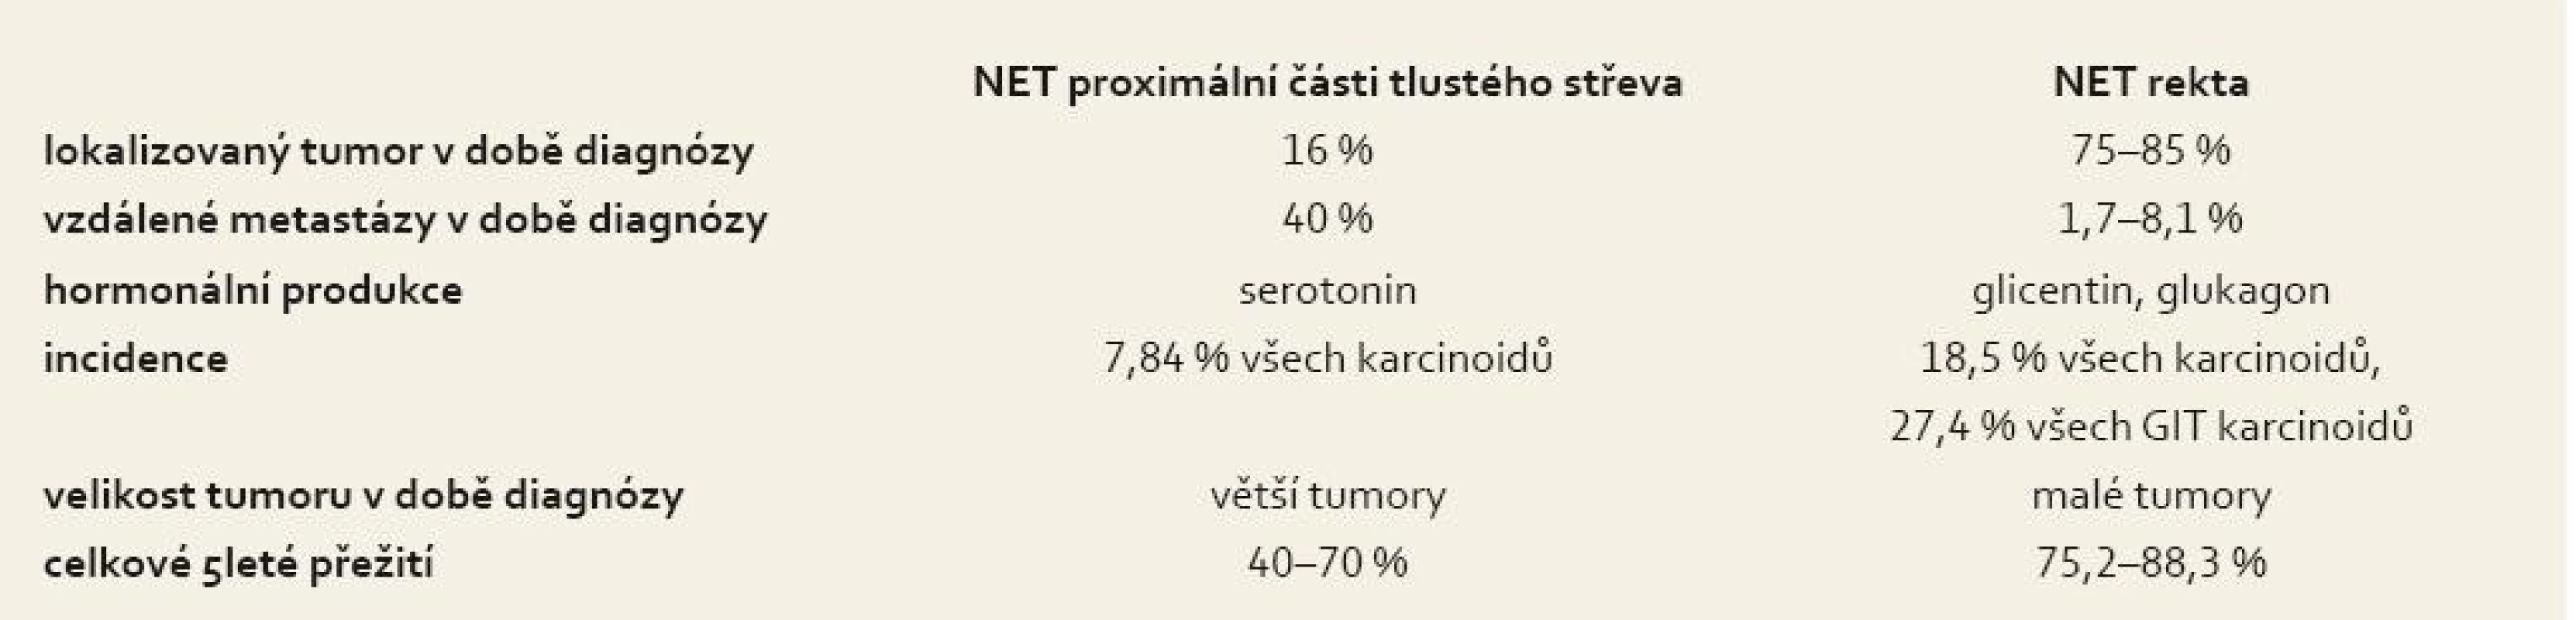 Porovnání charakteristik NET proximální části tlustého střeva a NET rekta.
Tab. 2. Comparison of the characteristics of NET of the proximal part of the large intestine and NET of the rectum.